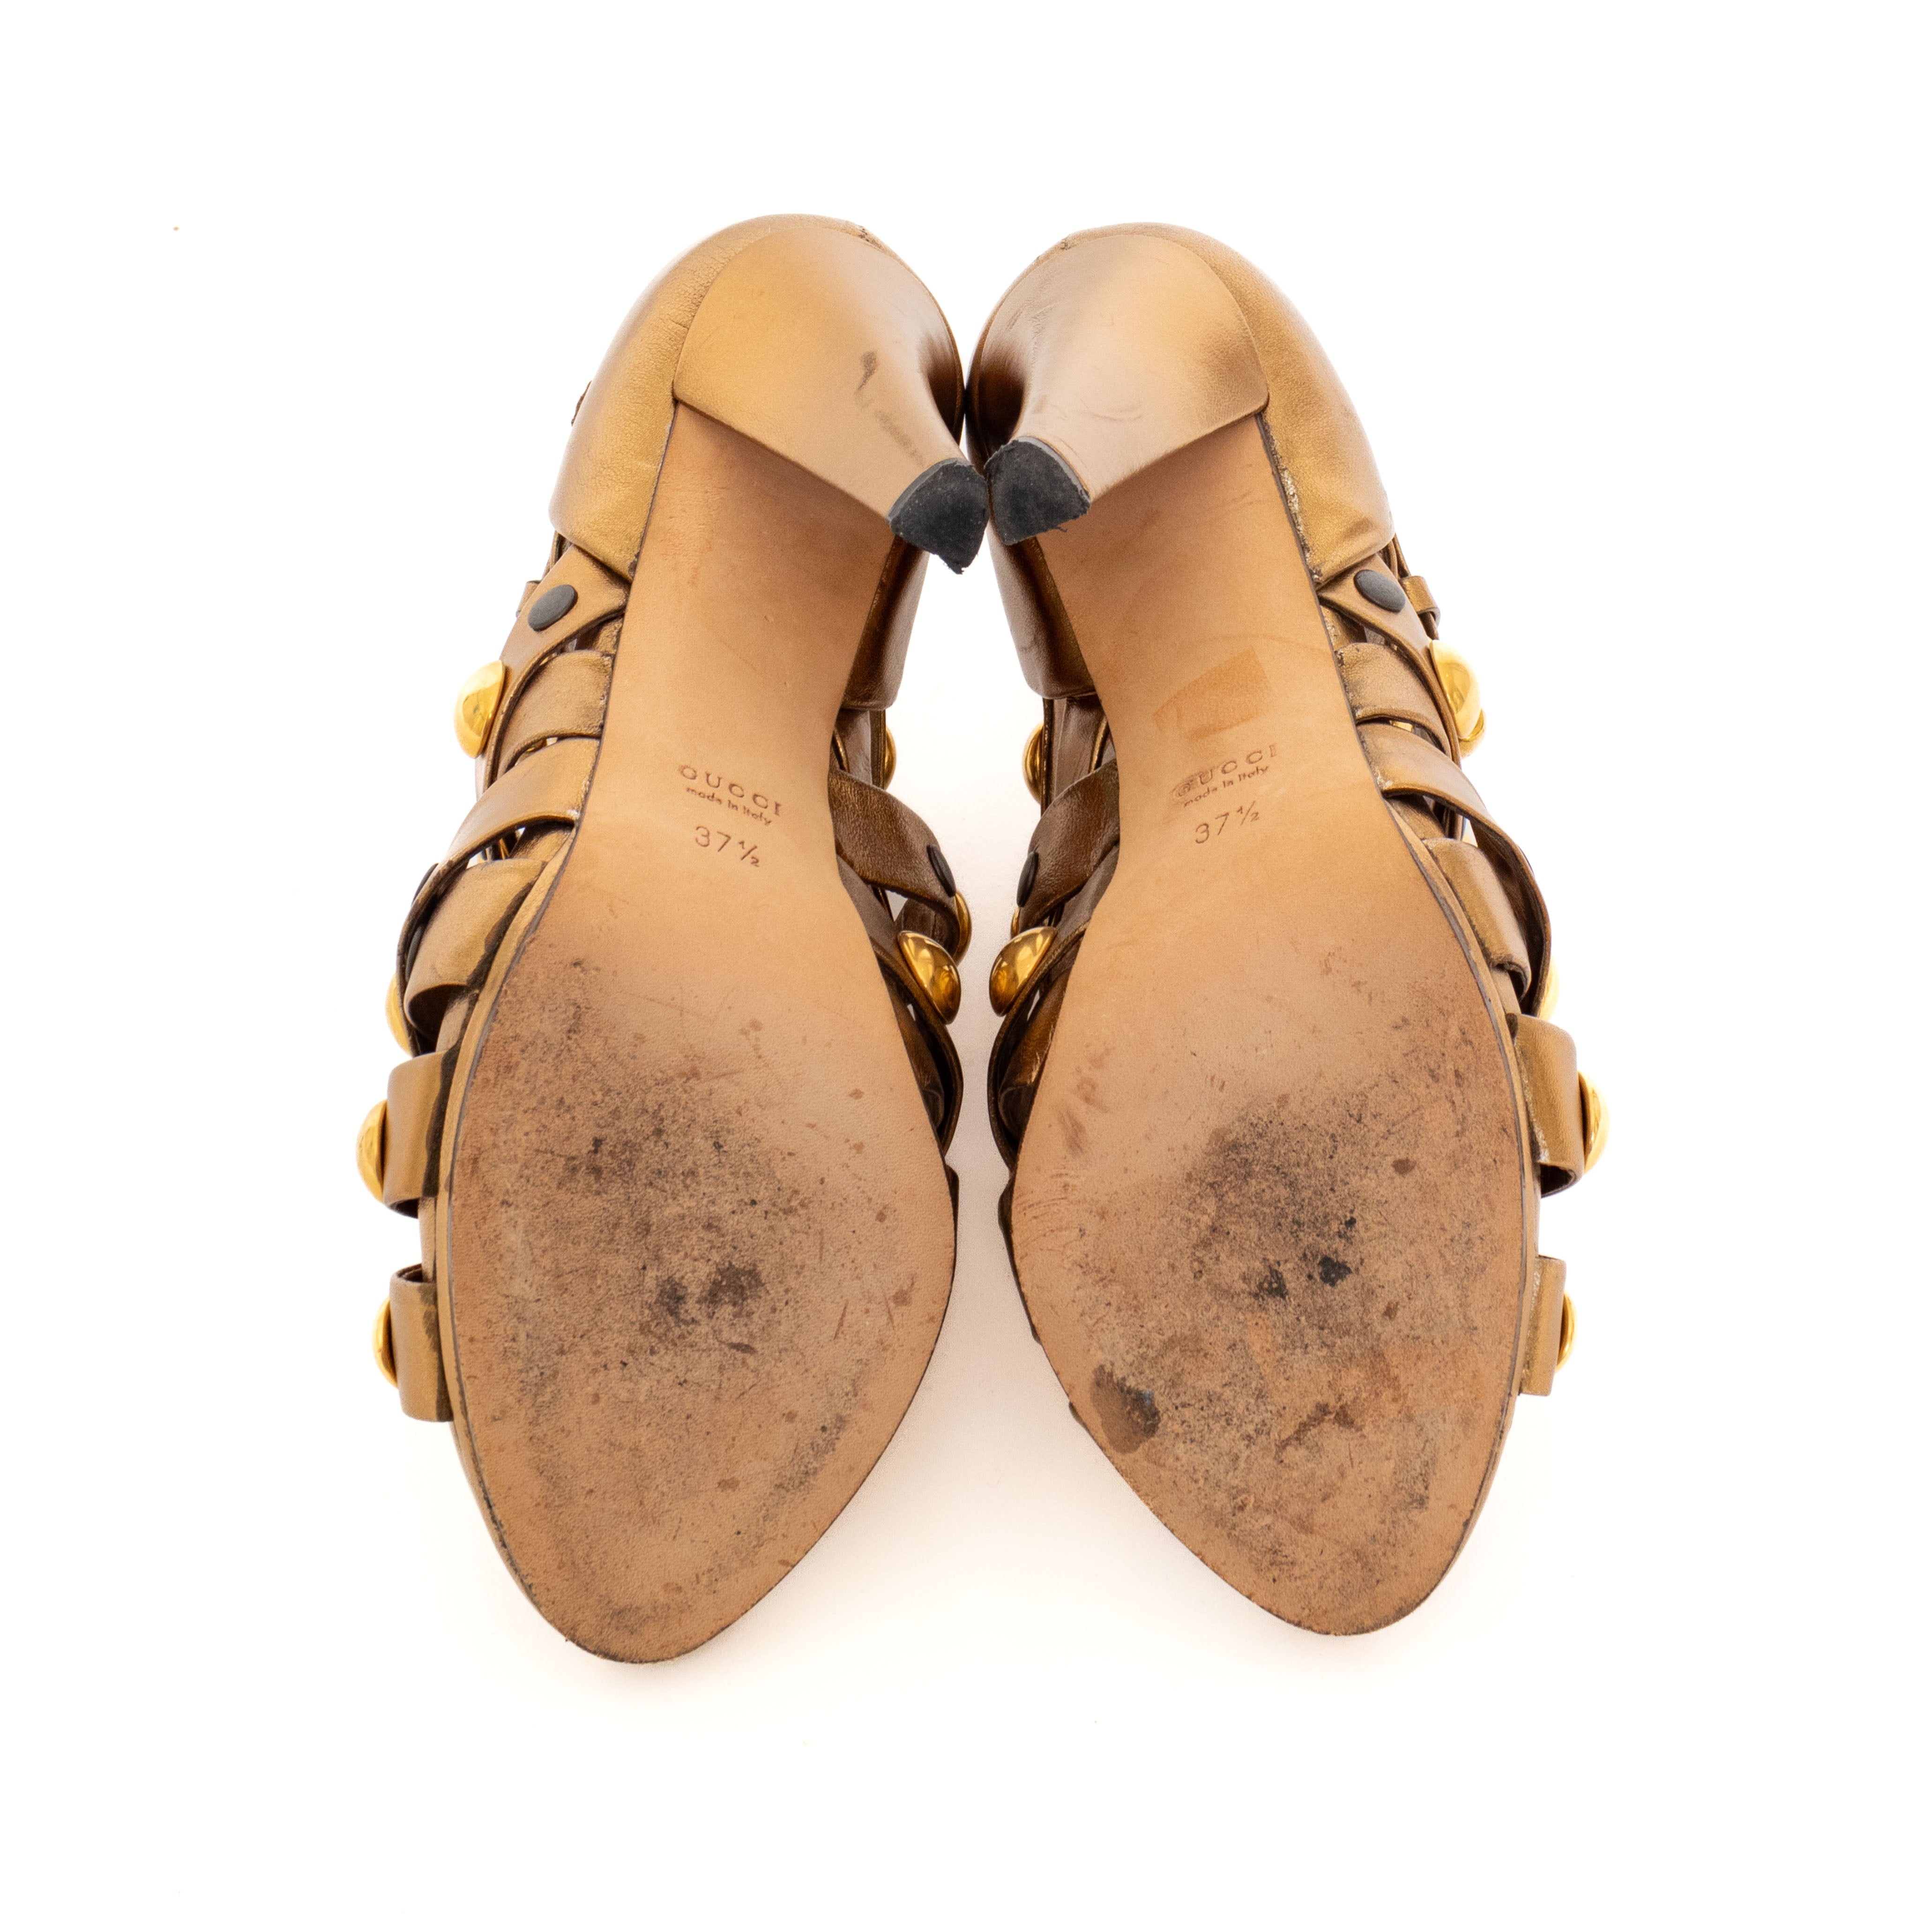 Summer Fashion Strappy Knee High Gladiator Stiletto Heel Pumps Sandals Shoes  G32 | eBay